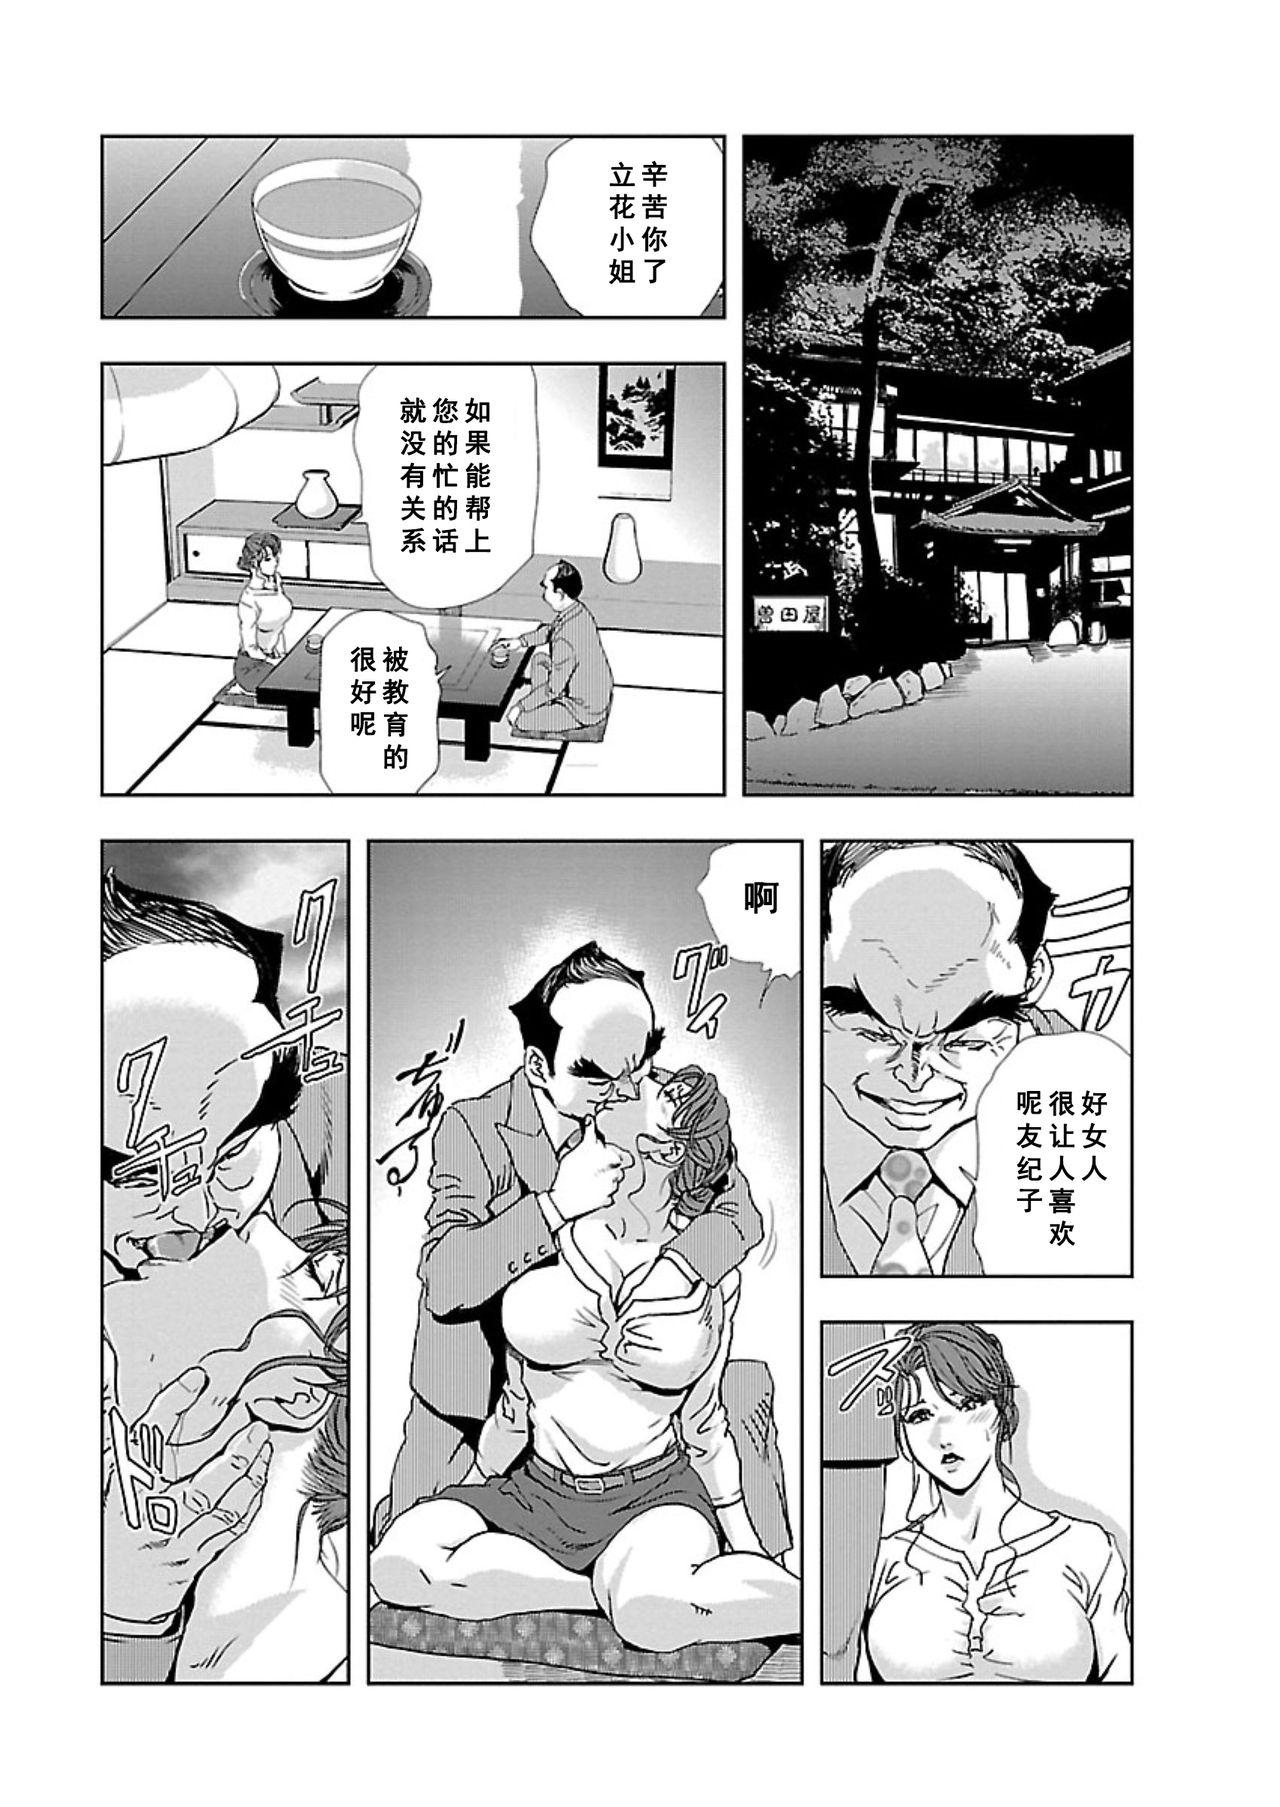 【不可视汉化】[Misaki Yukihiro] Nikuhisyo Yukiko chapter 06  [Digital] 16